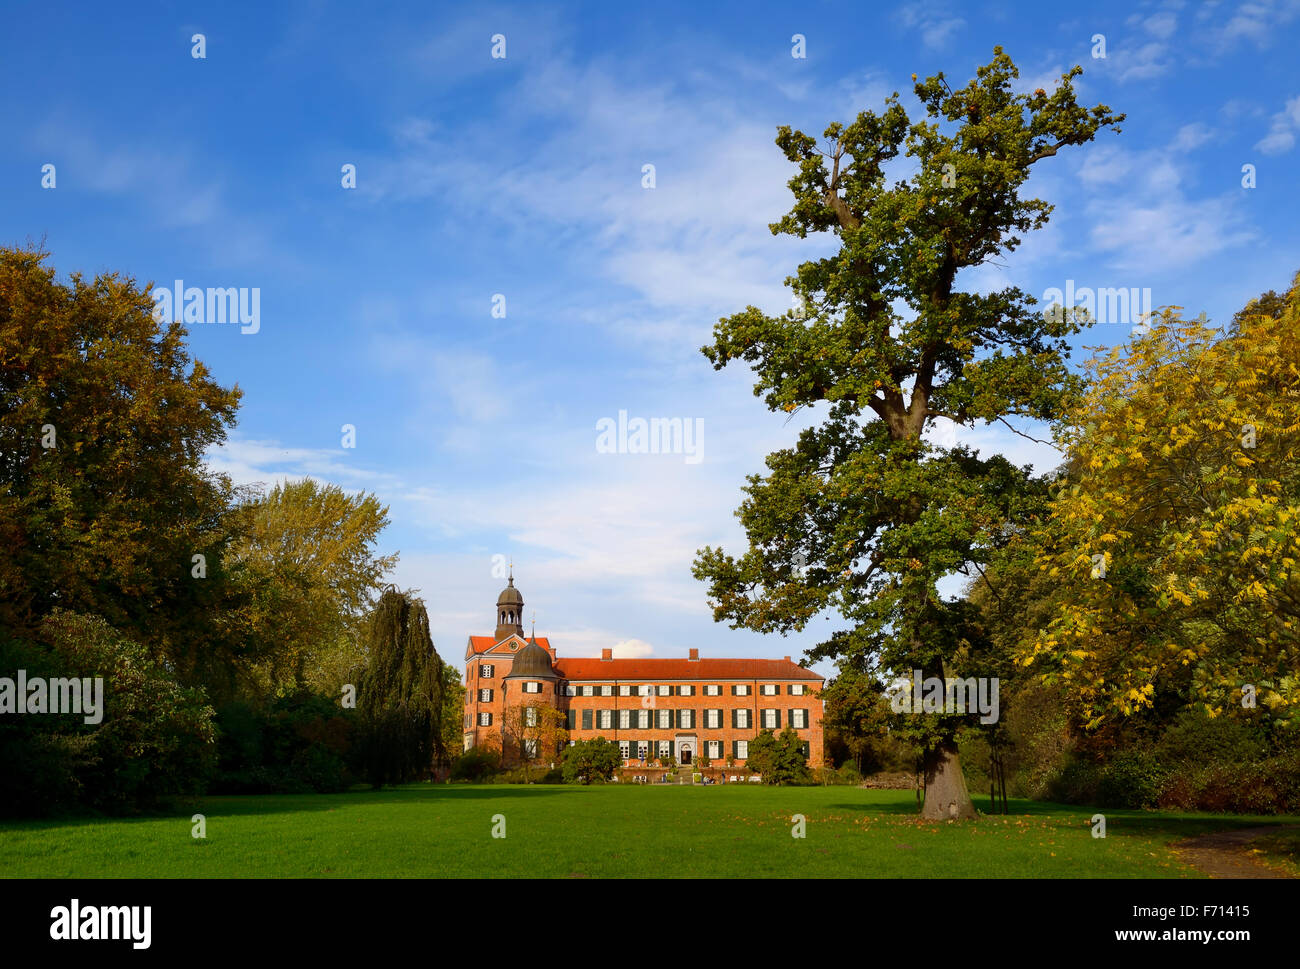 Palacio y parque eutin, Schleswig-Holstein, Alemania Foto de stock